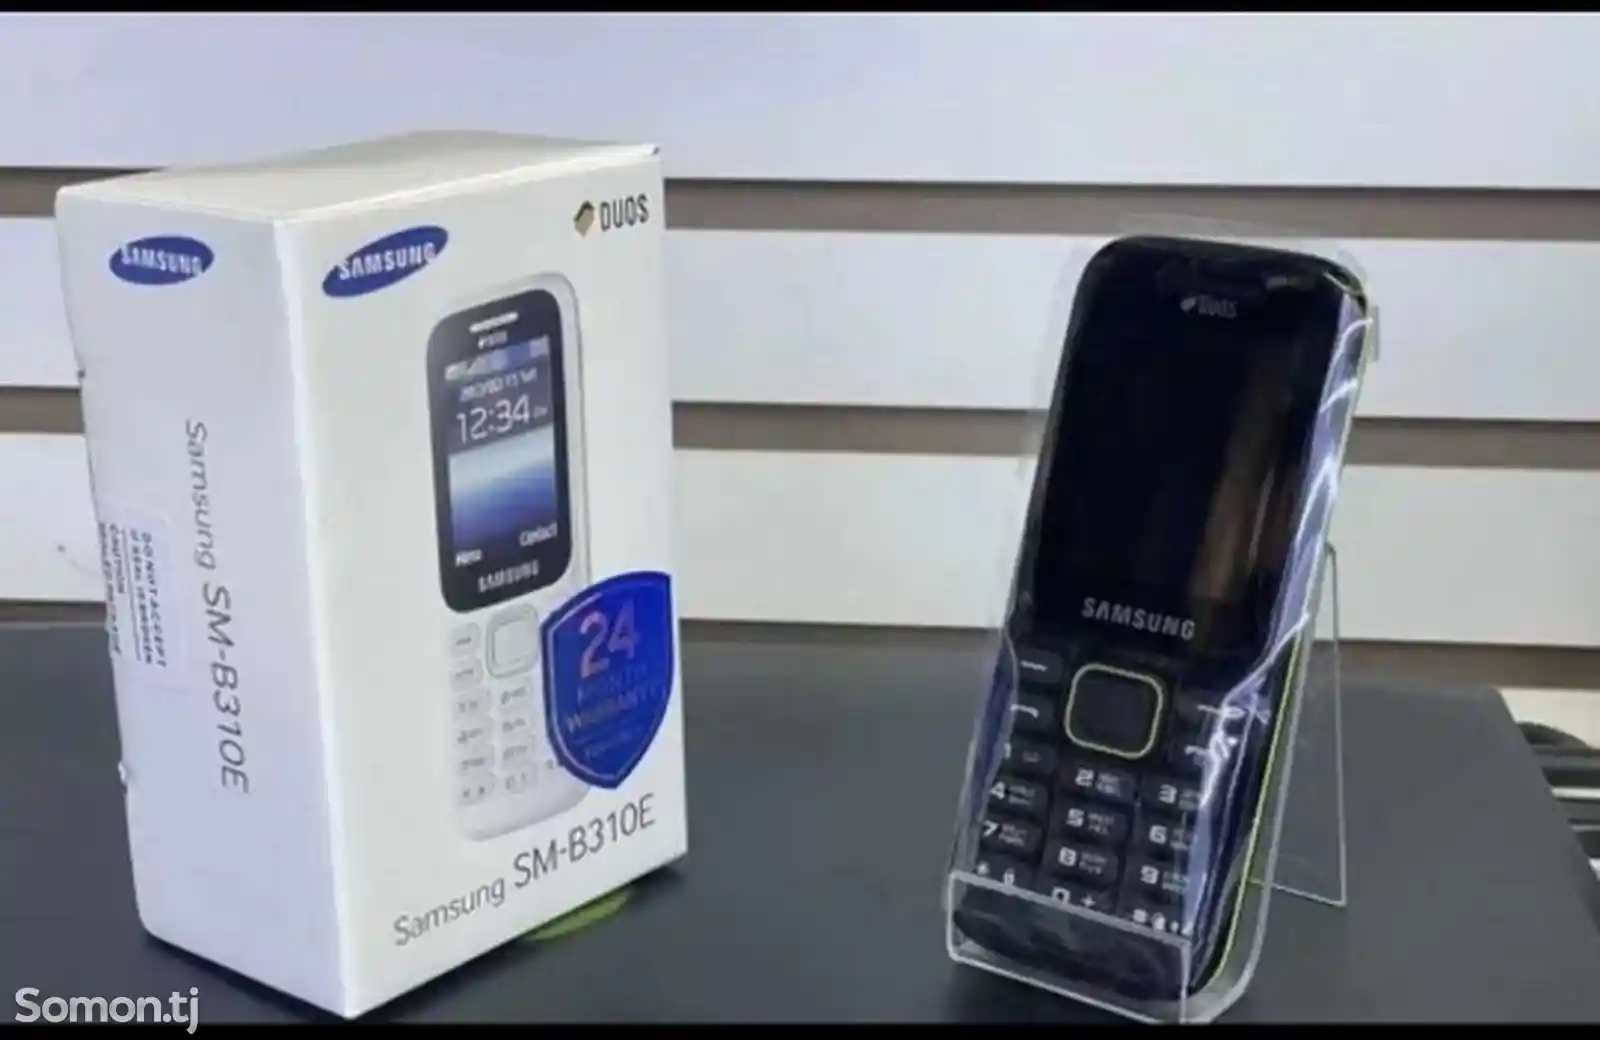 Samsung B310-3